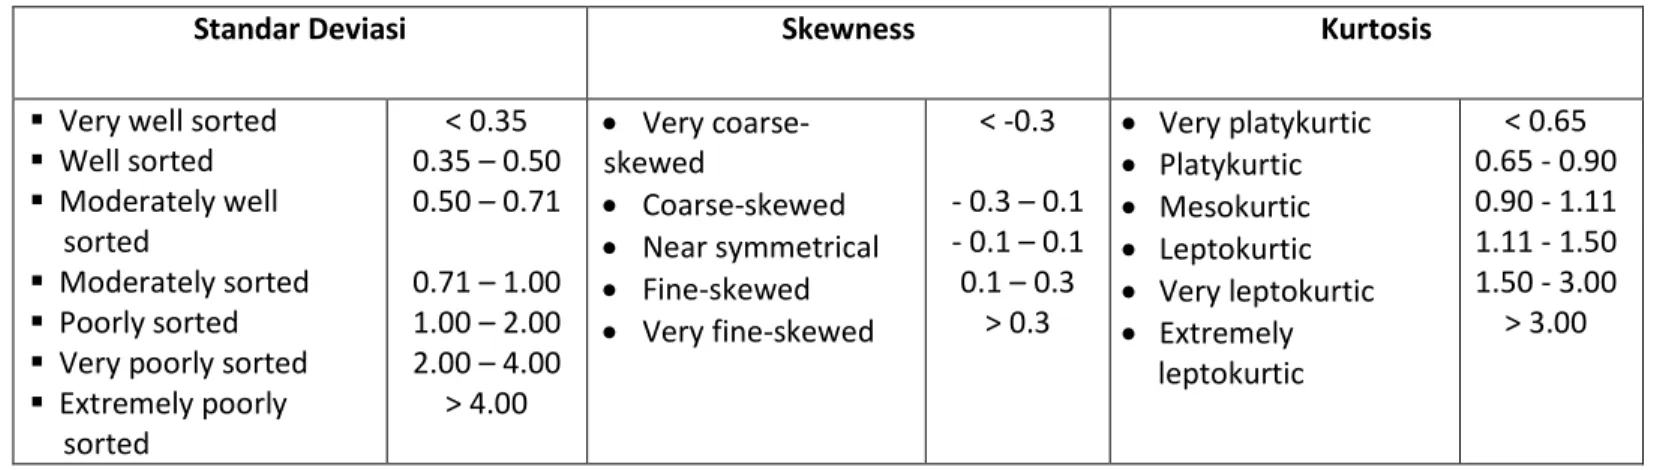 Tabel 1.  Distribusi Kualitatif Sedimen untuk Standar Deviasi, Skewness, dan Kurtosis (CHL, 2002) 